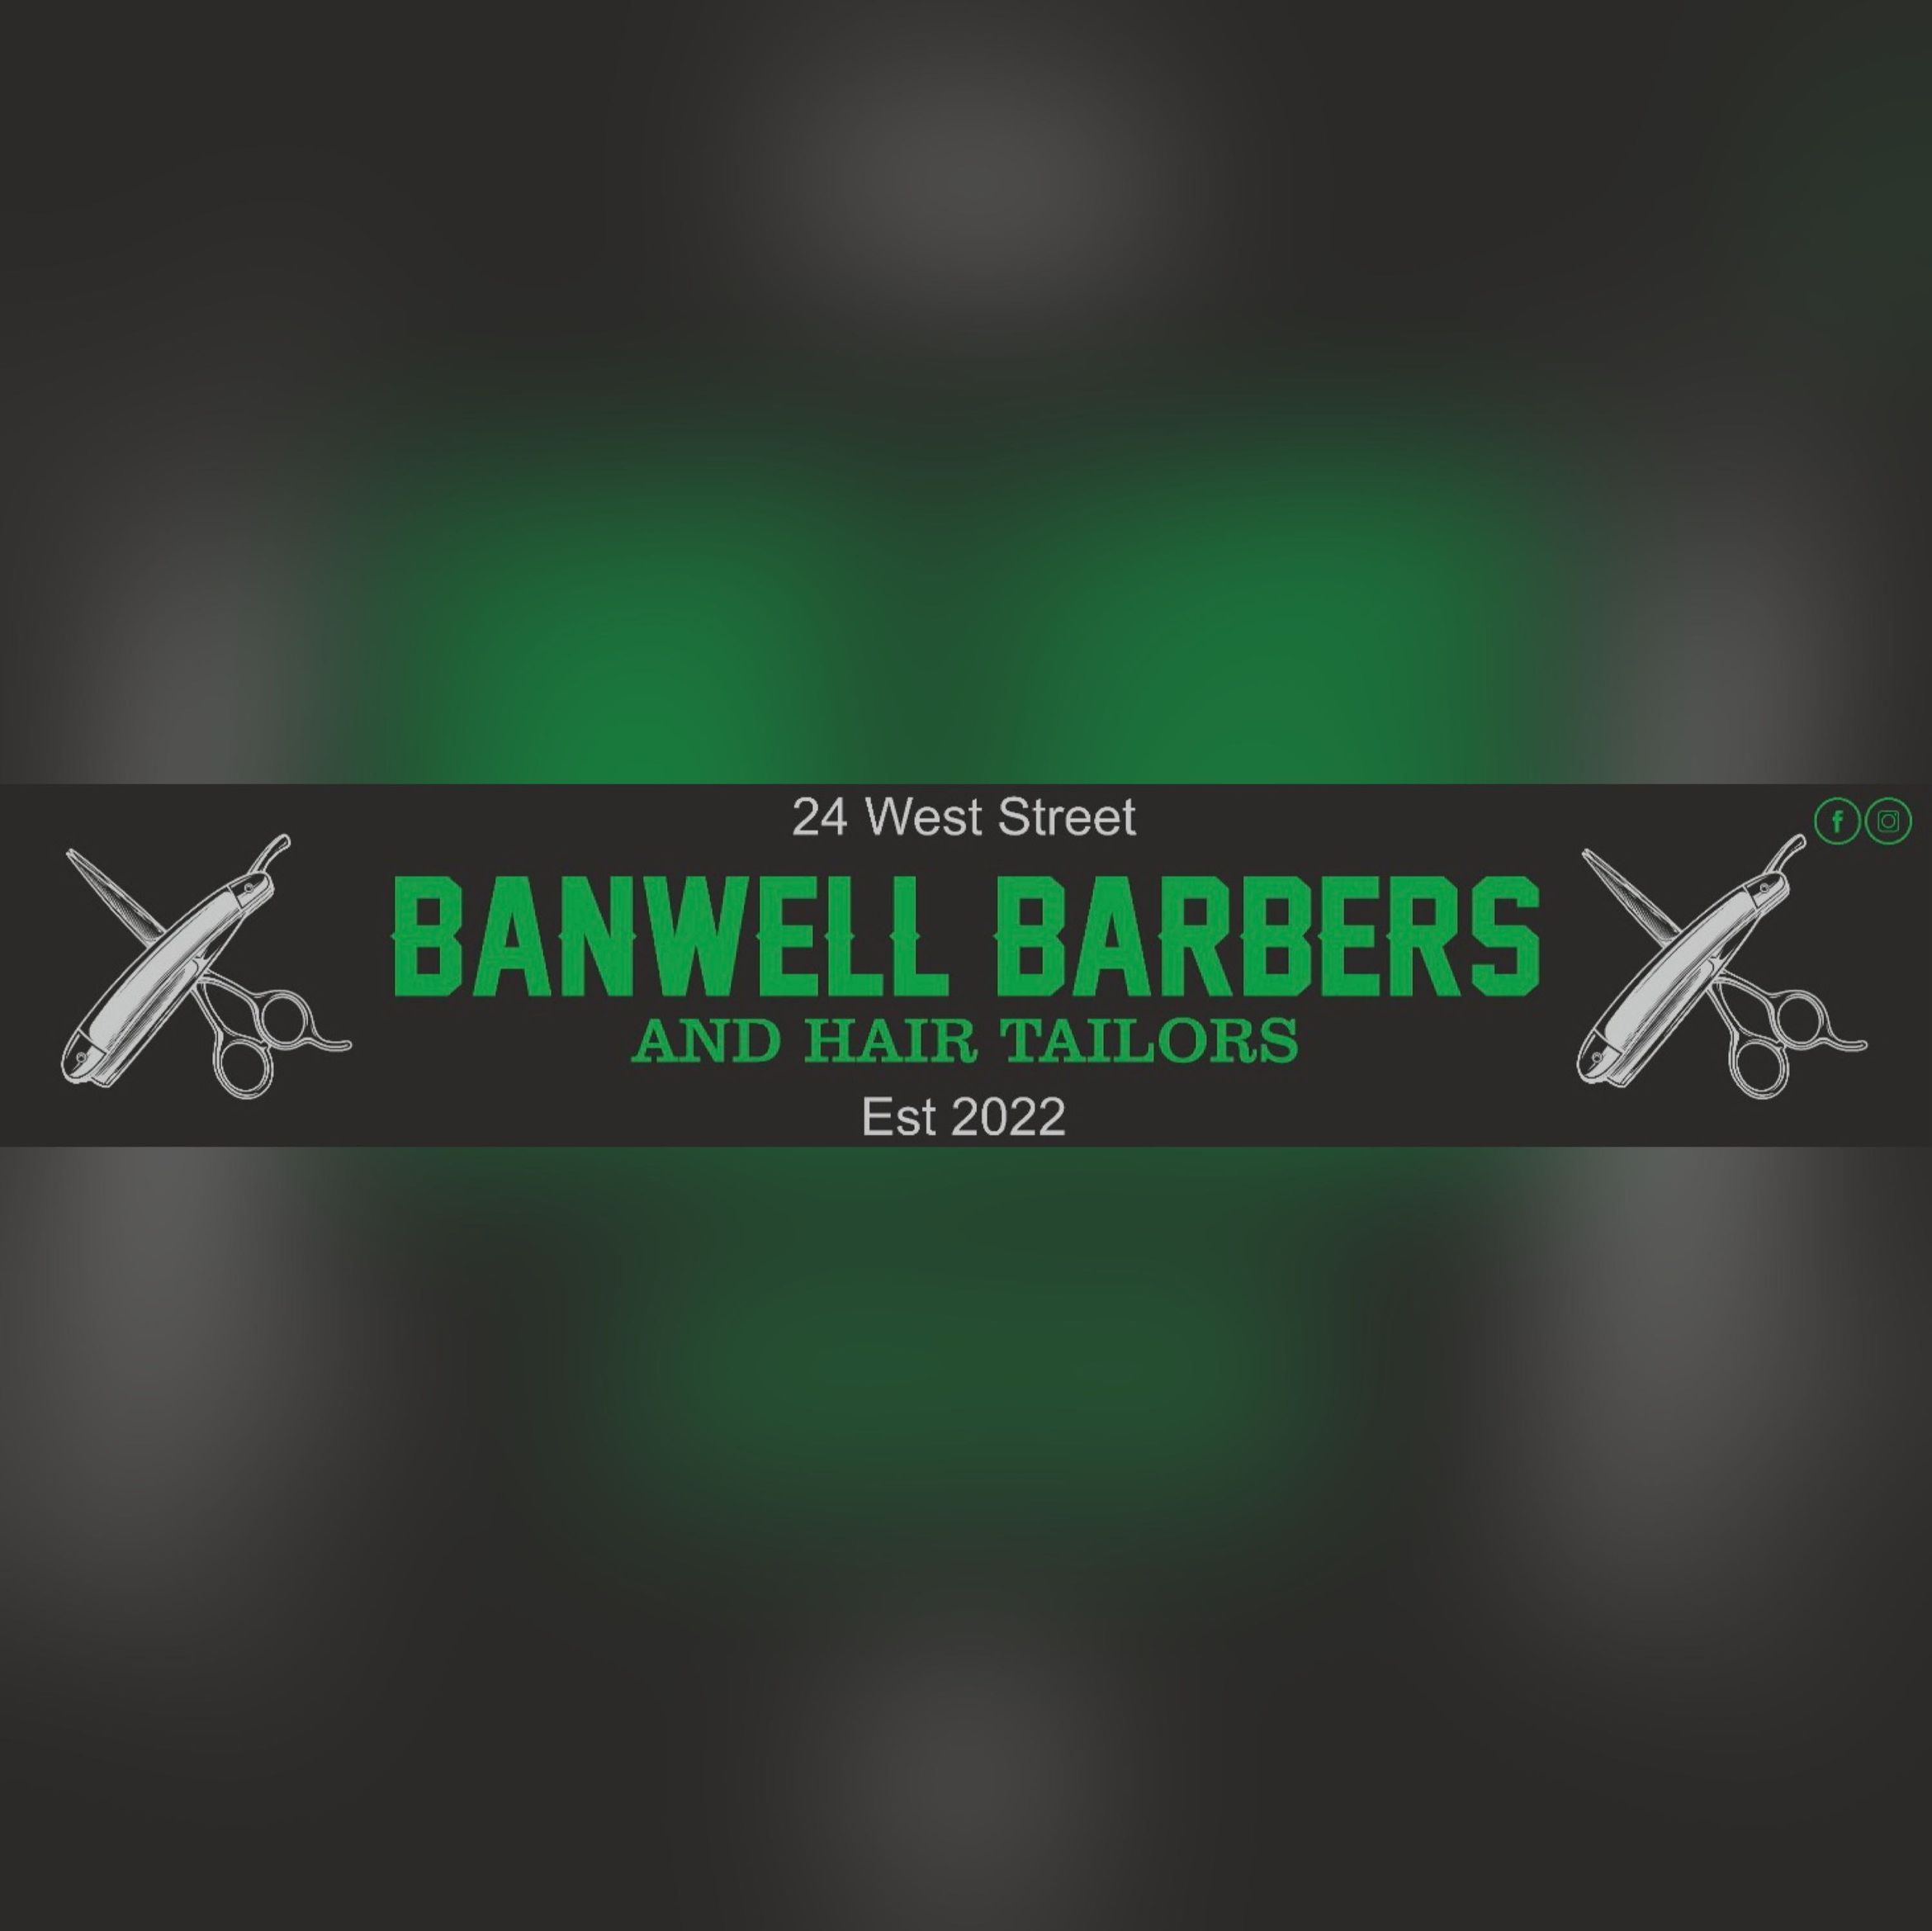 Banwell barbers, 24 West Street, Banwell, BS29 6DB, Weston-super-Mare